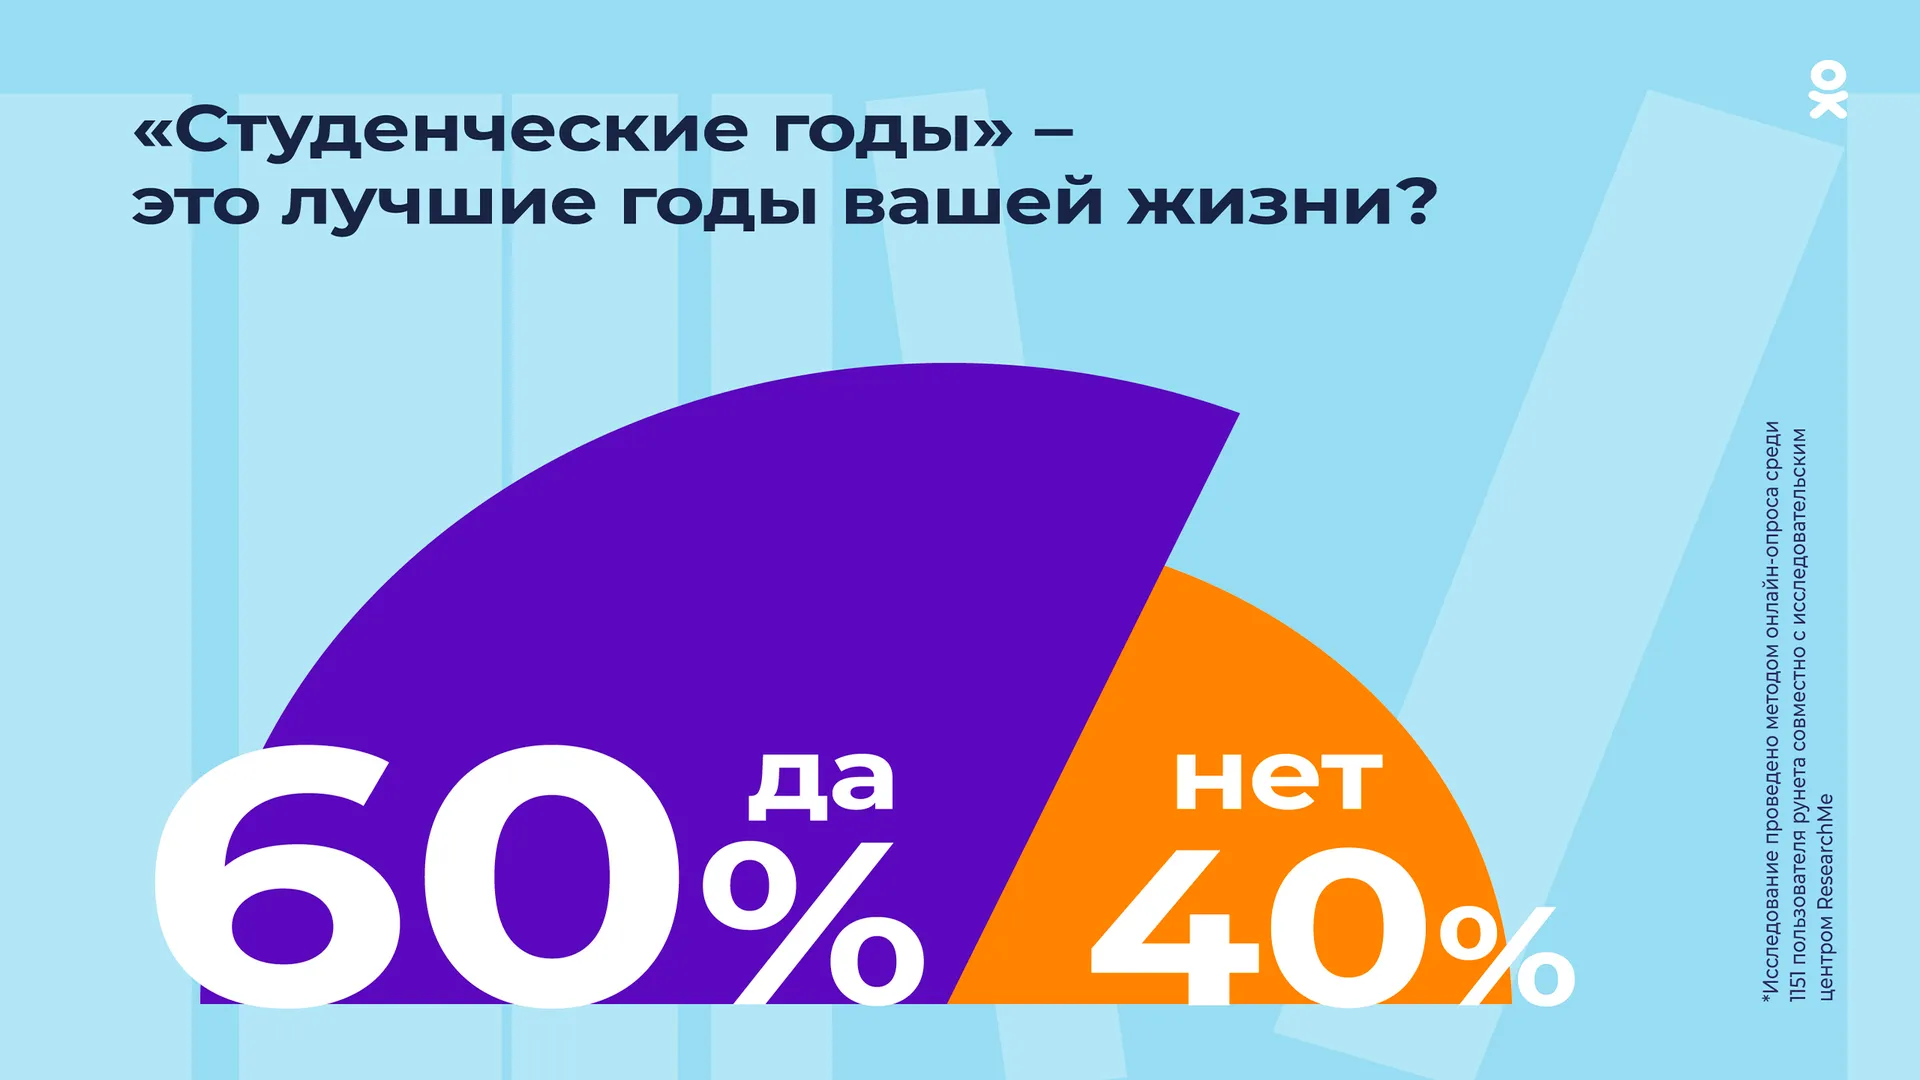 «Одноклассники»: 60% пользователей Рунета считают студенческие годы лучшими в жизни